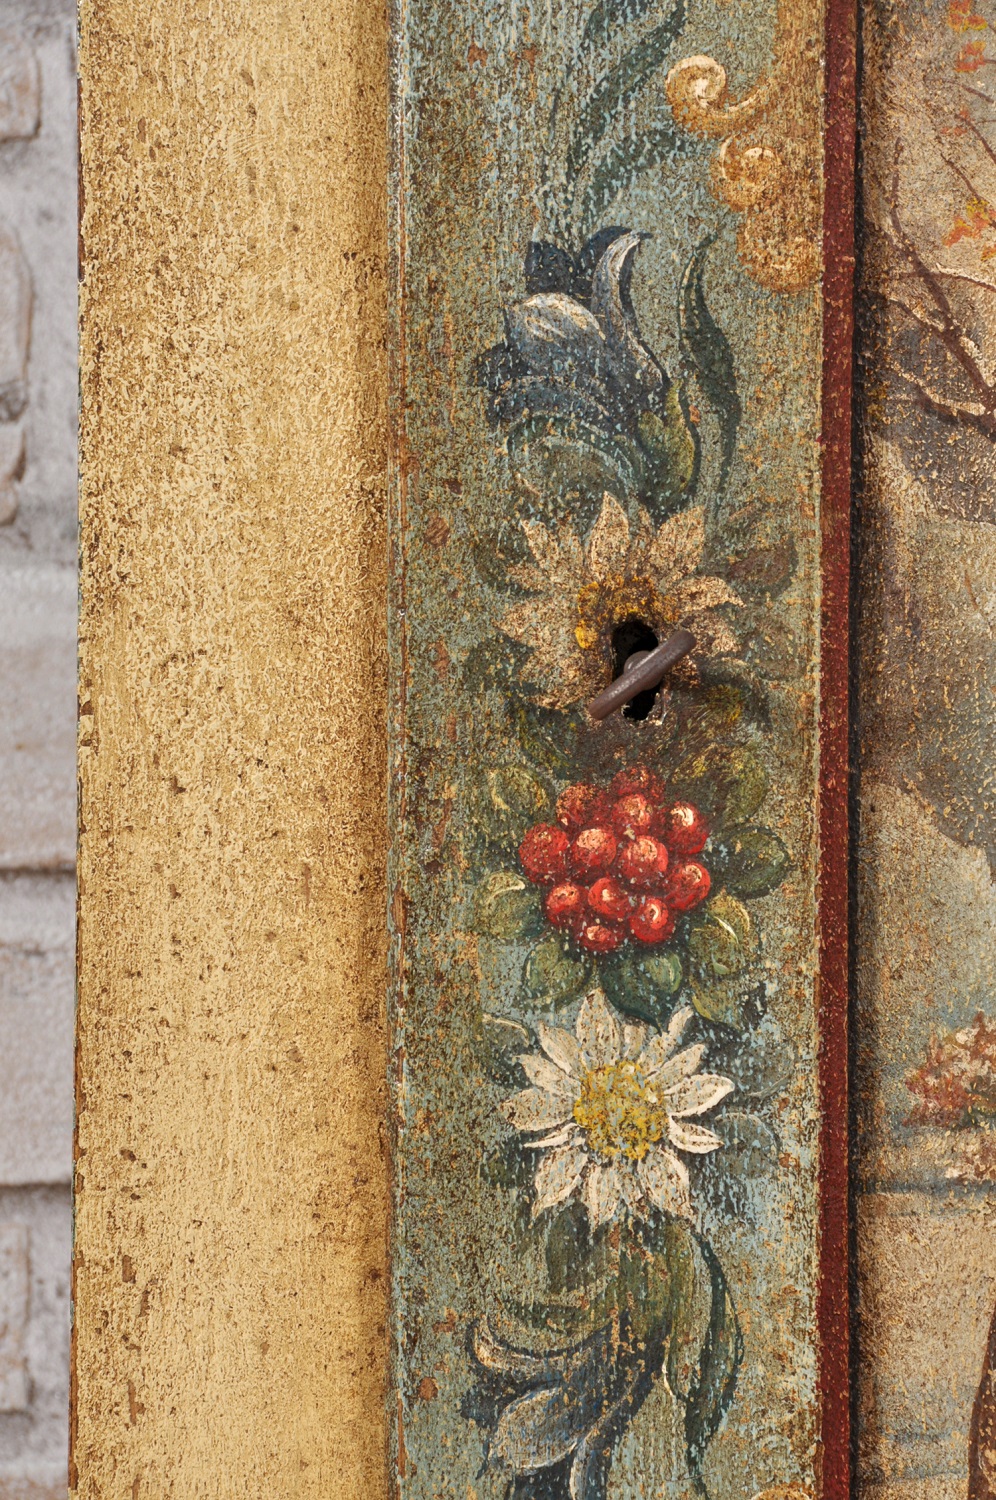 le decorazioni delle fasce anta armadio dispensa sono floreali con barocchi nello stile classico Tirolese austriaco Zillertal lavorazioni artigianale di lusso fatte a mano su misura in abete massello